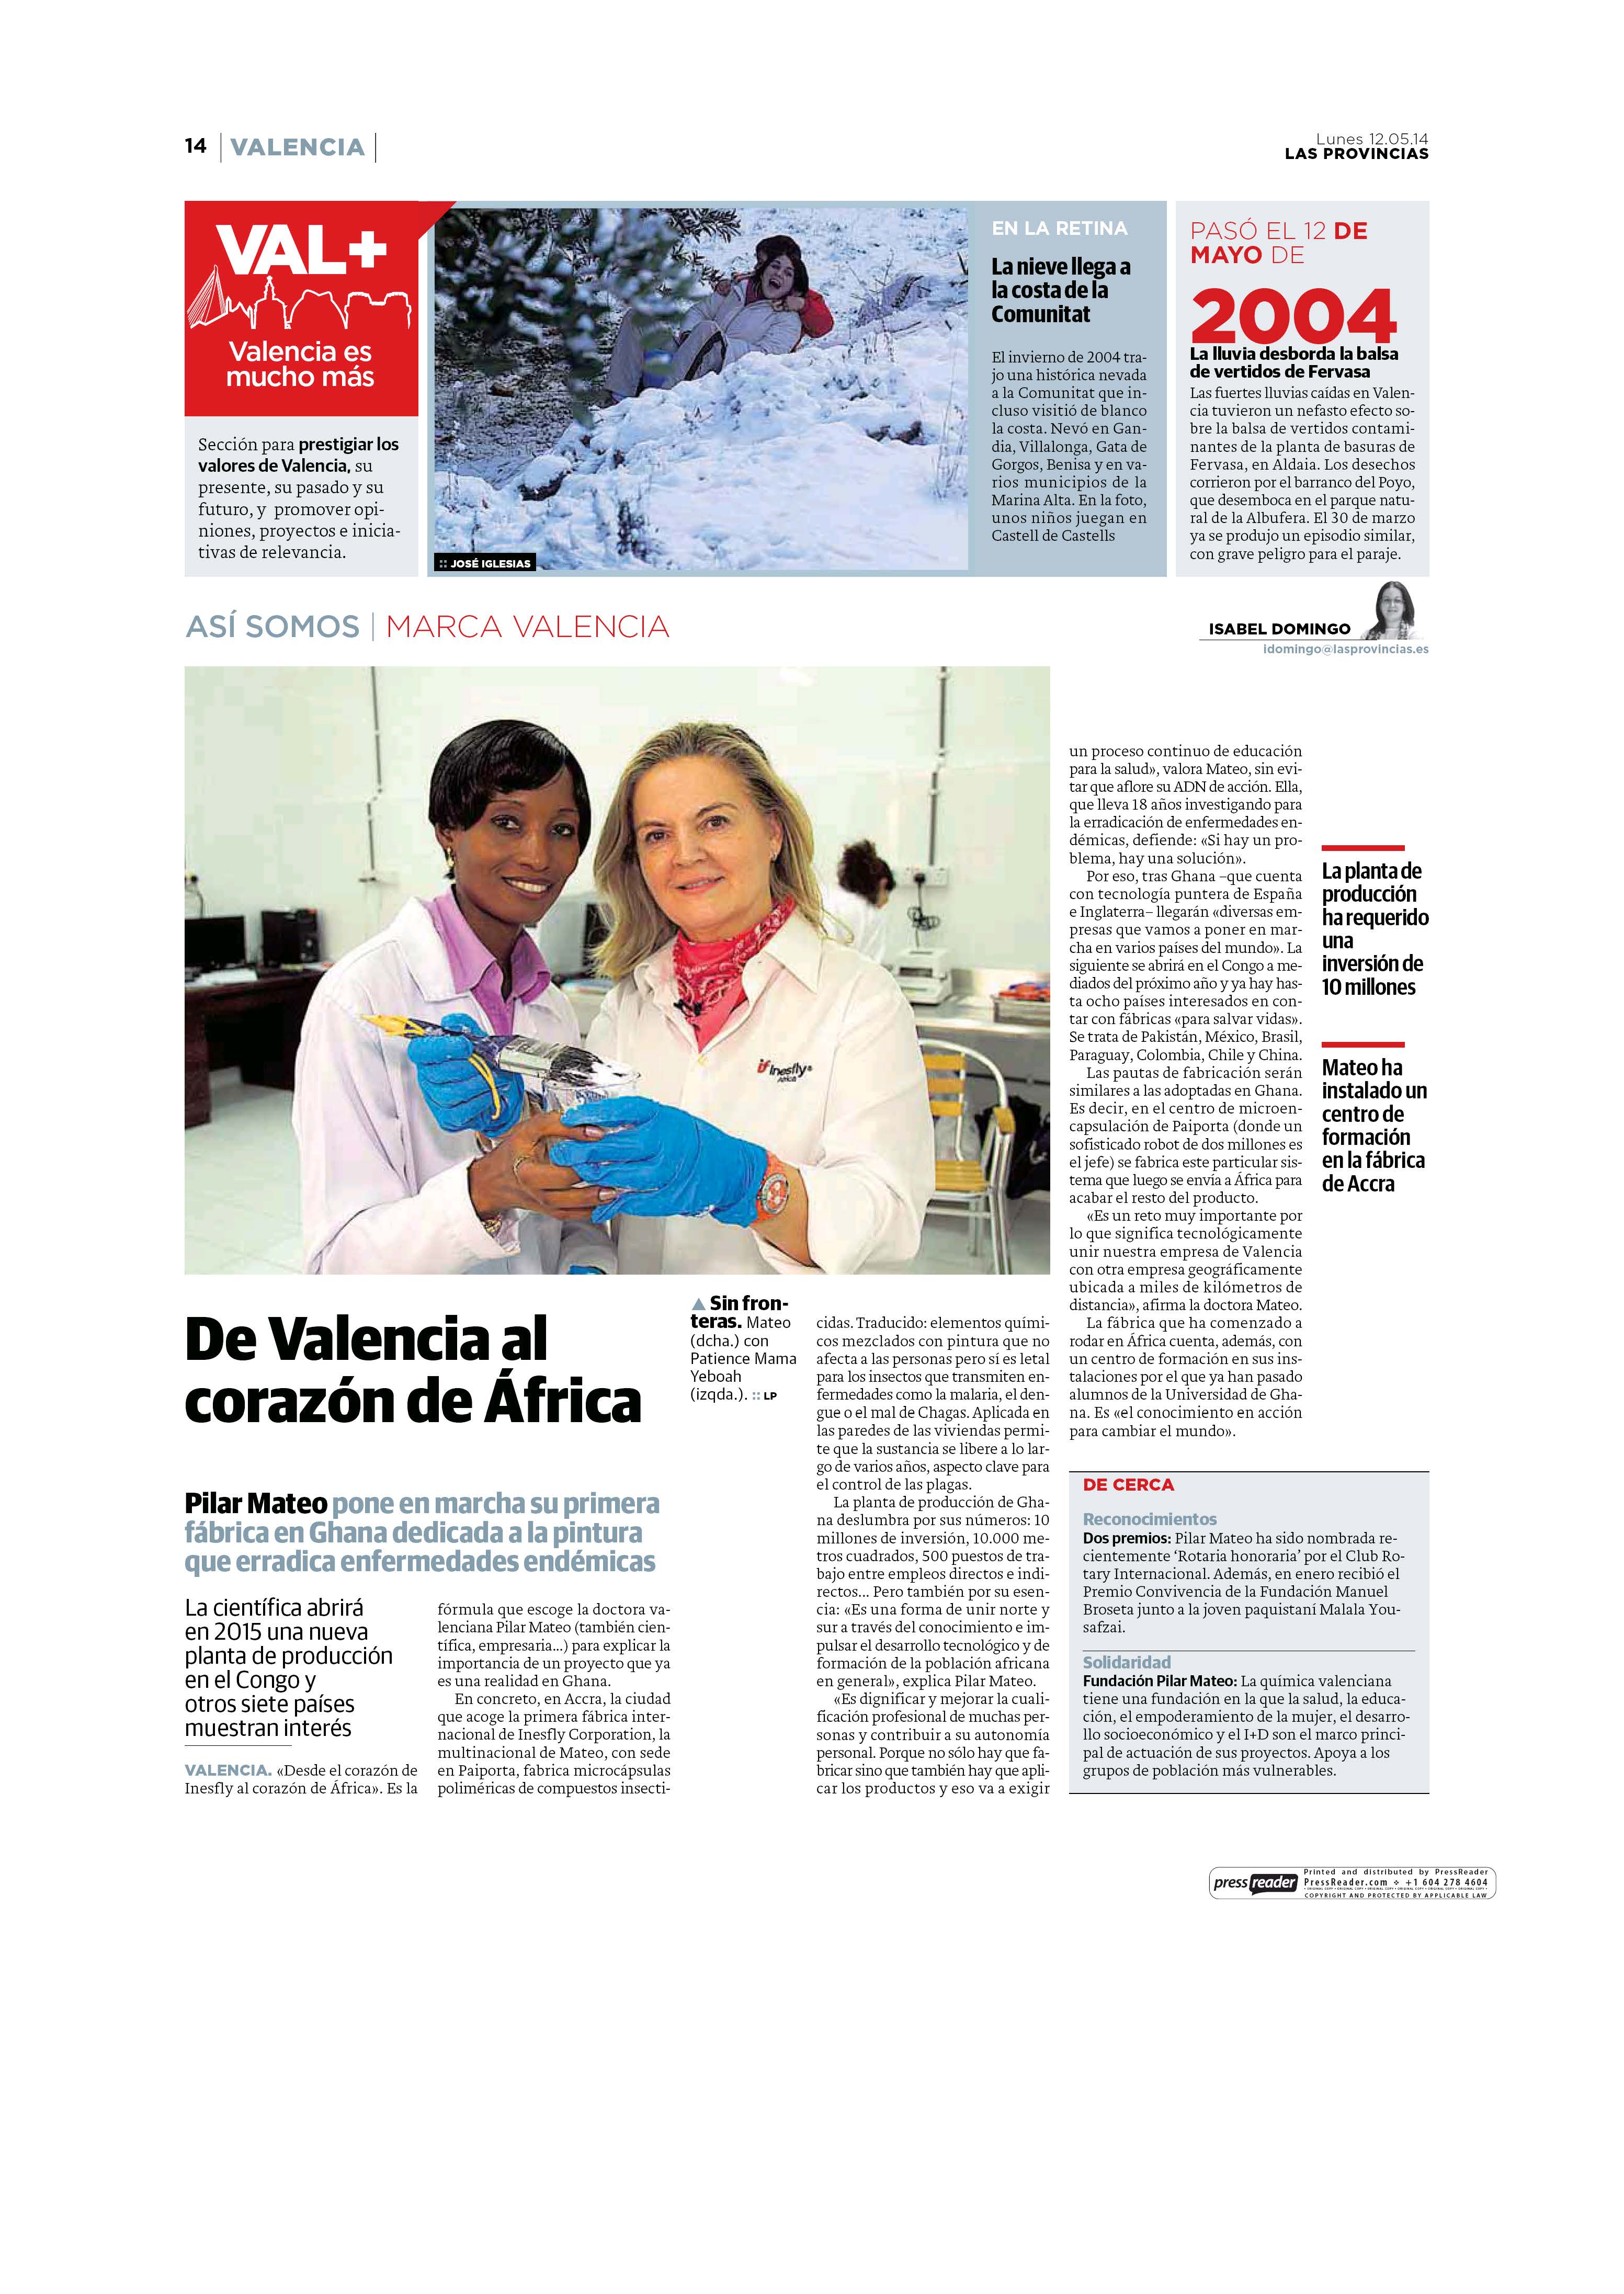 De Valencia al corazón de Africa Las Provincias 12 May 2014